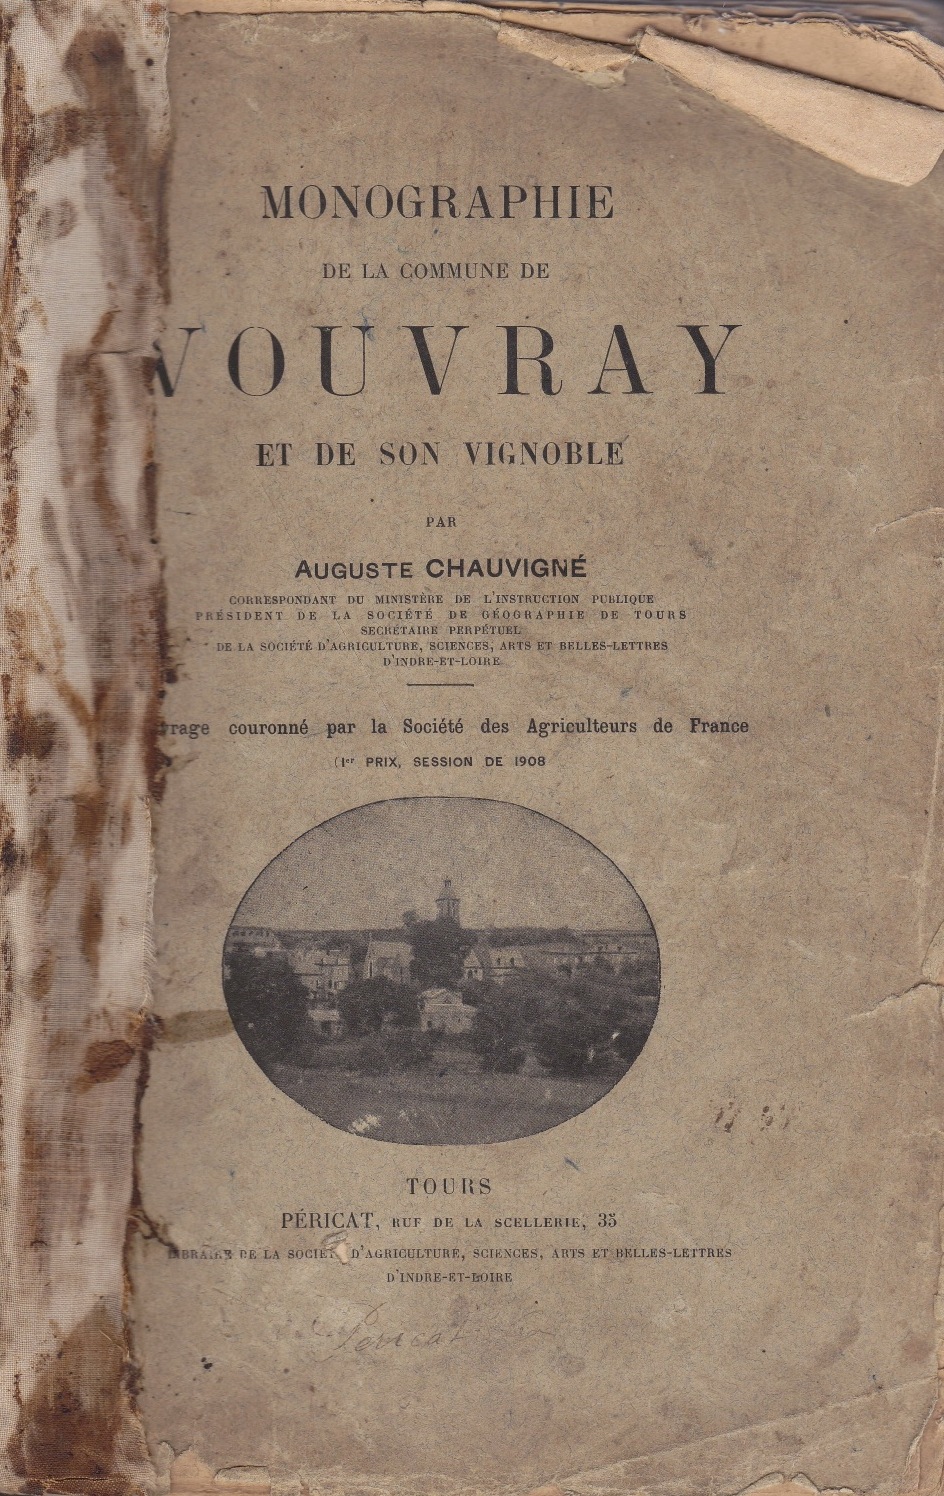 Monographie de Vouvray et de son vignoble